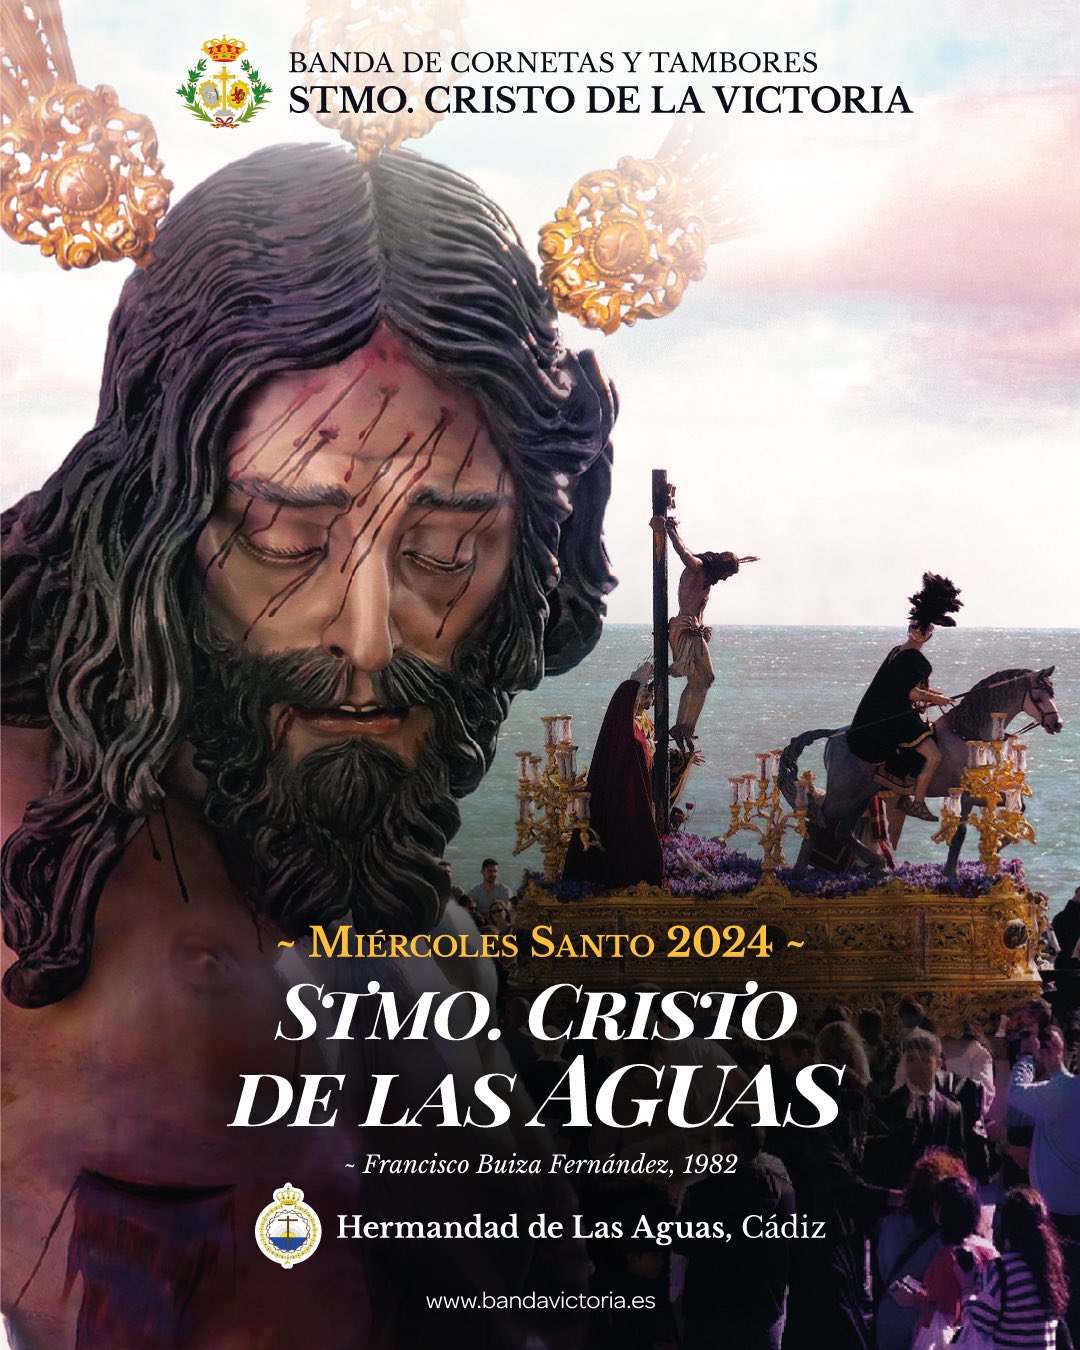 La BCT Cristo de la Victoria de León sonara tras el Cristo de las Aguas de Cádiz en el 2024